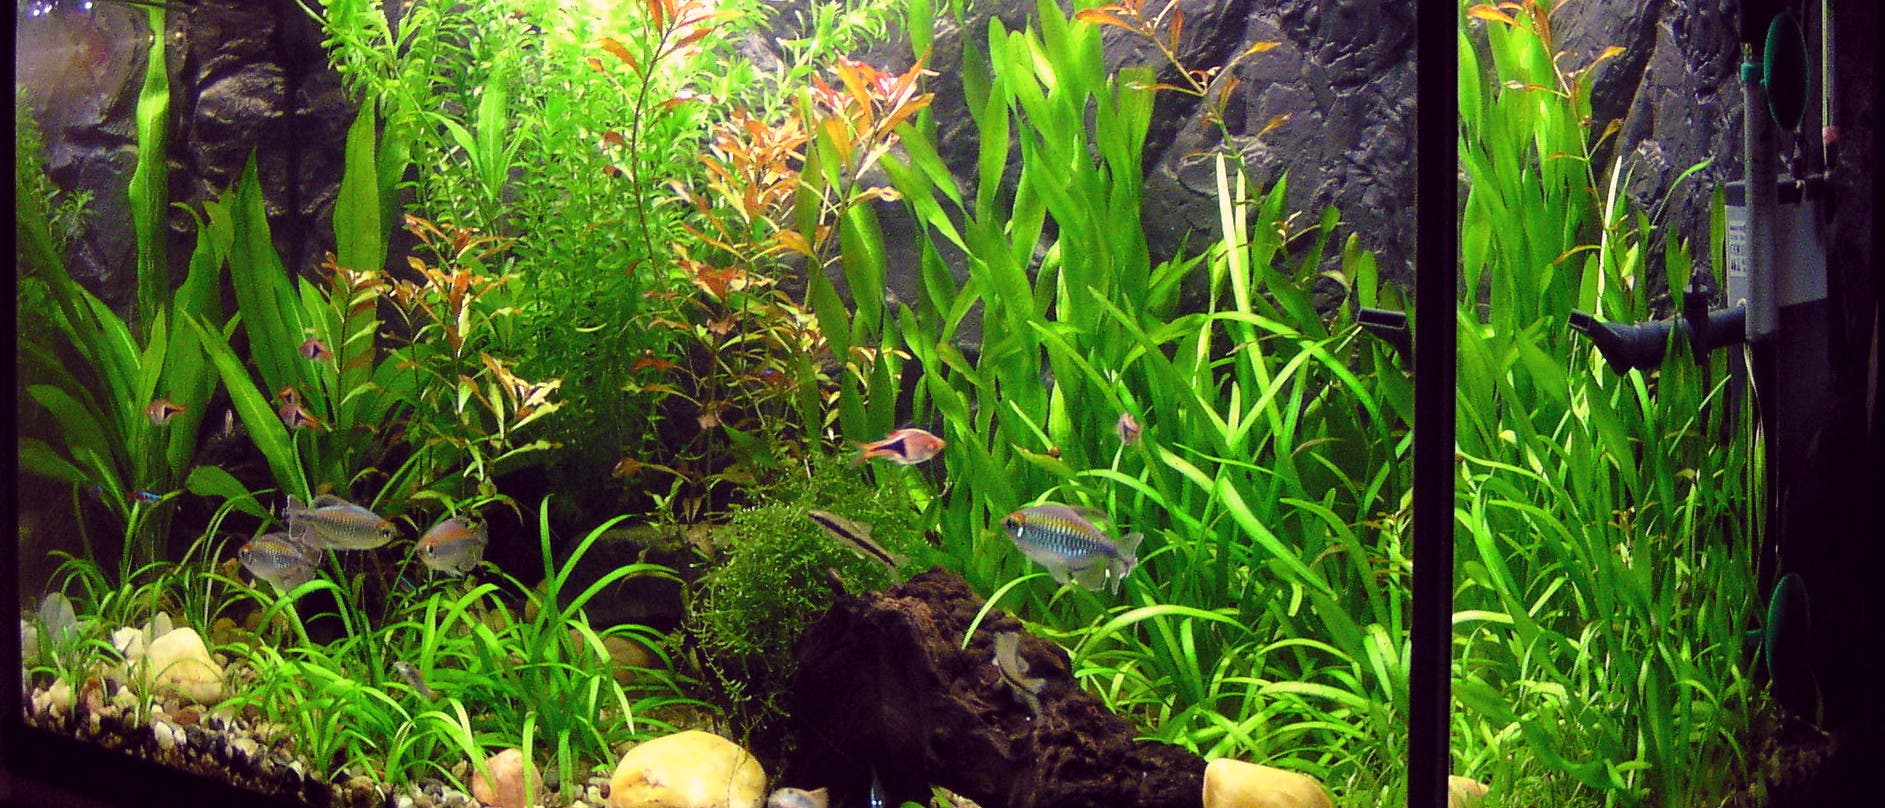 Wohnzimmer-Aquarium mit Pflanzen und Fischen